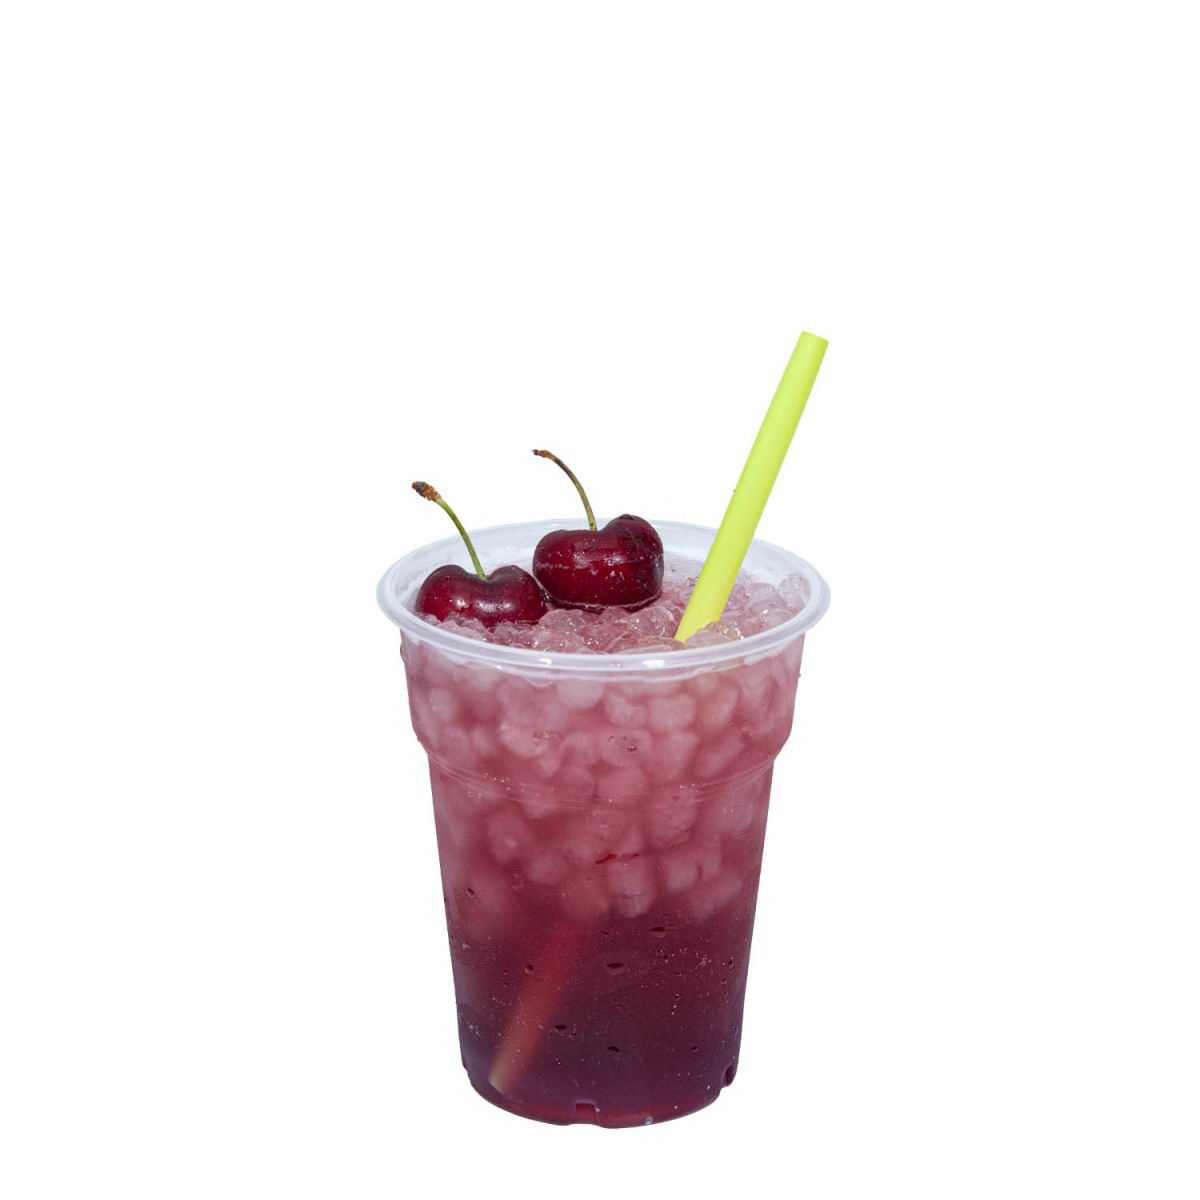 Homemade cherry juice